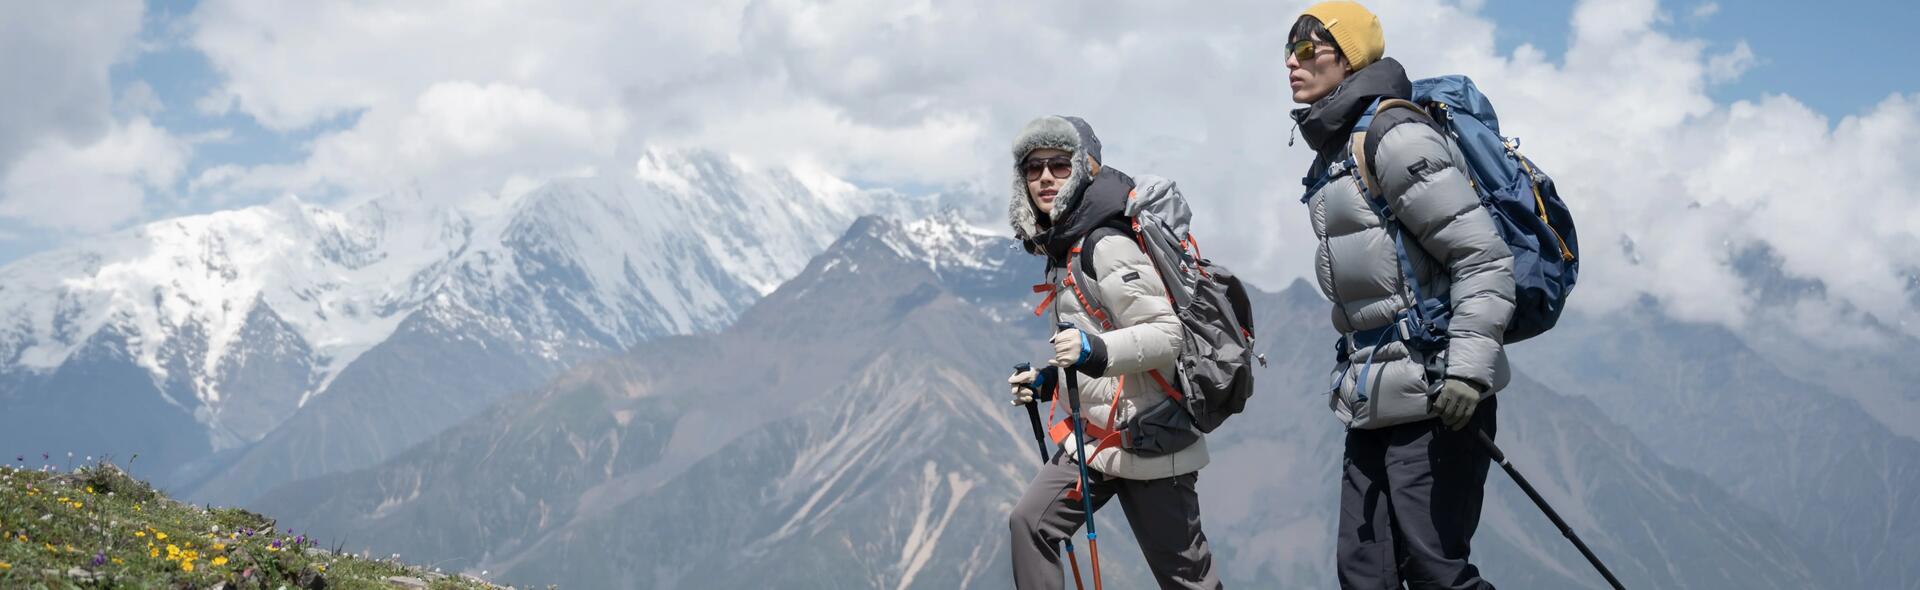 osoby wędrujące po górach w kurtkach puchowych trzymając kije trekkingowe w rękach